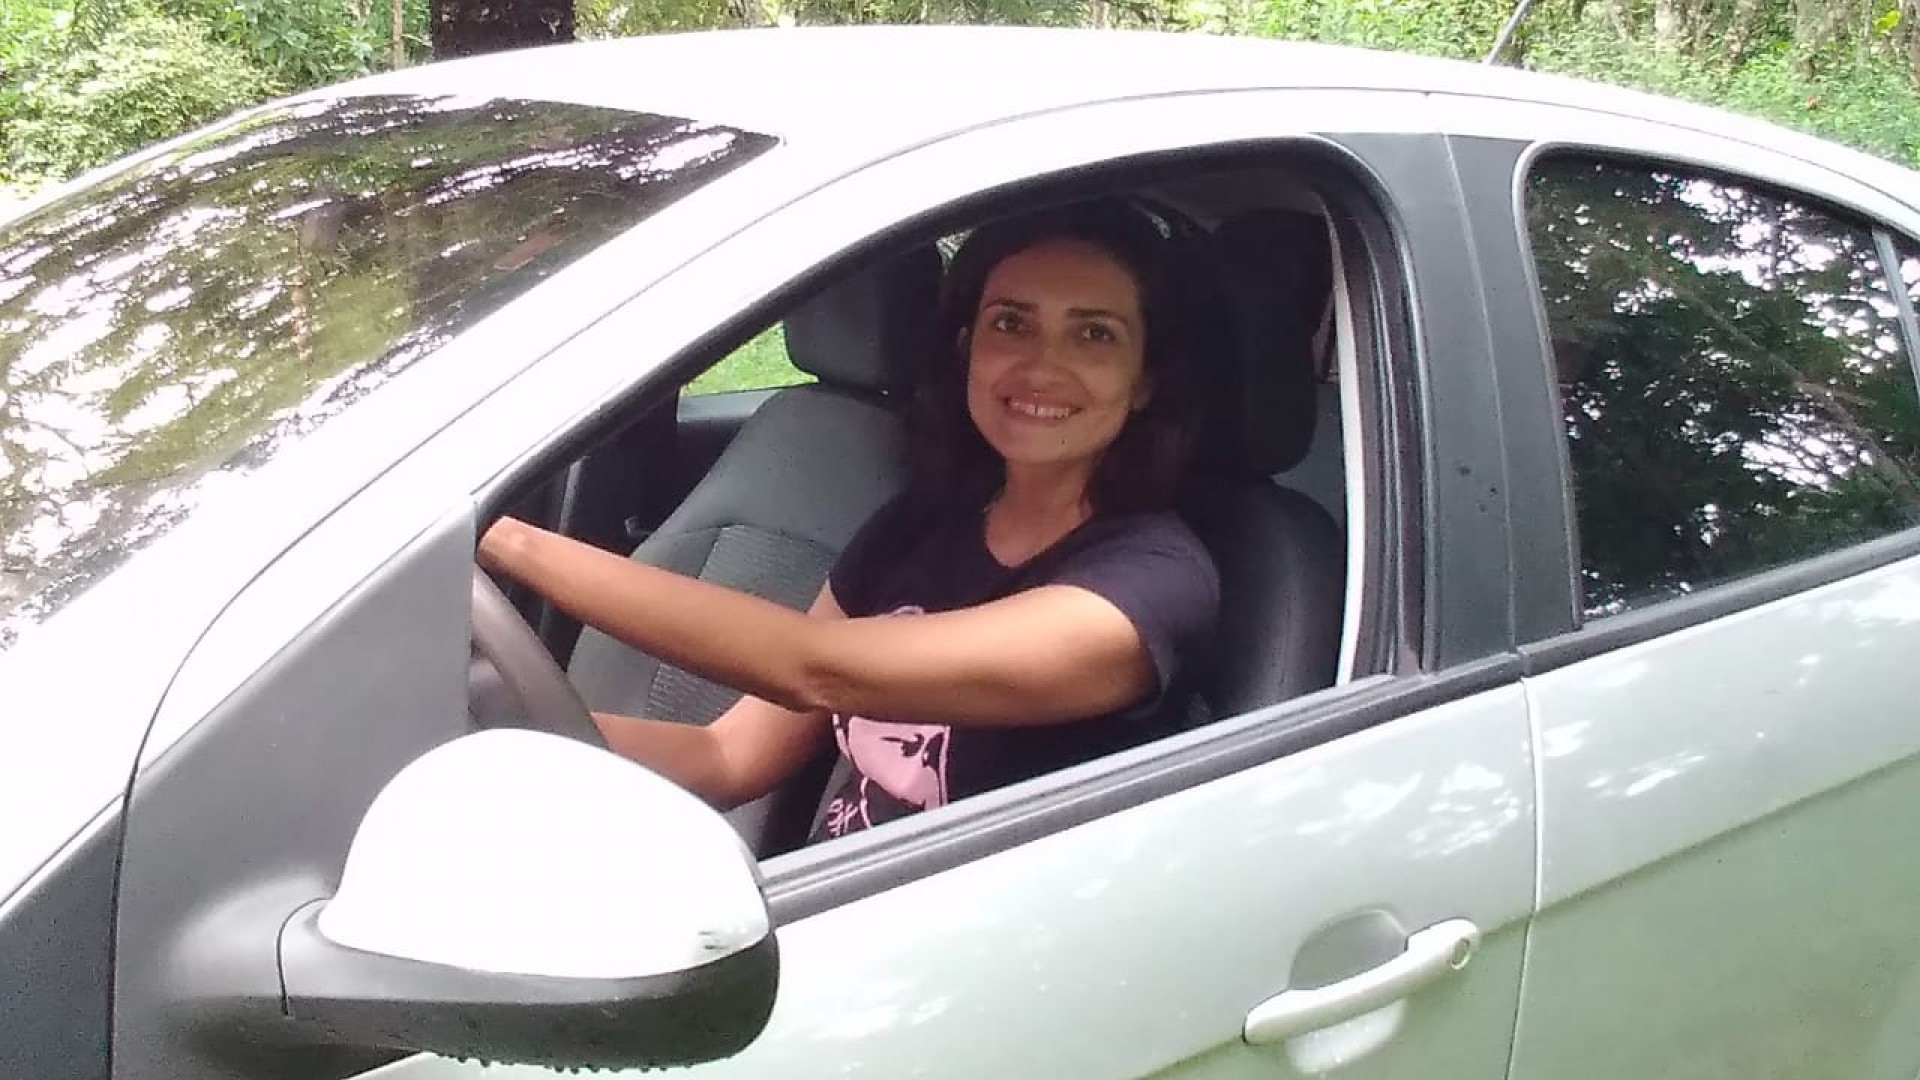 Luciana Menezes Monte mudou de corretora antes de renovar seguro de carro (Foto: Divulgação)